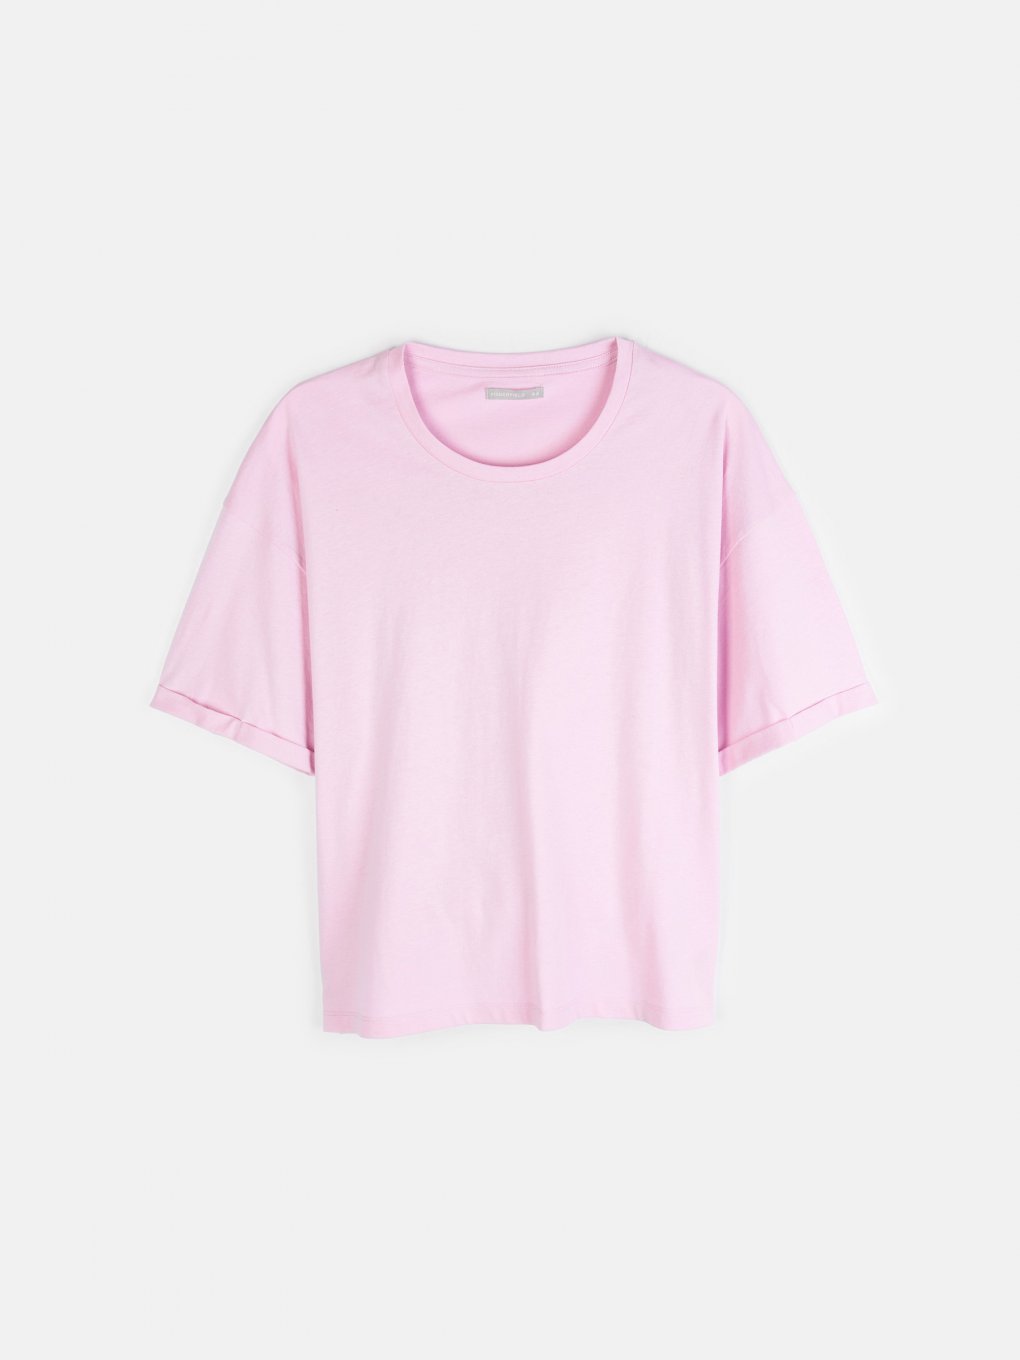 Základné bavlnené basic tričko s krátkym rukávom dámske plus size